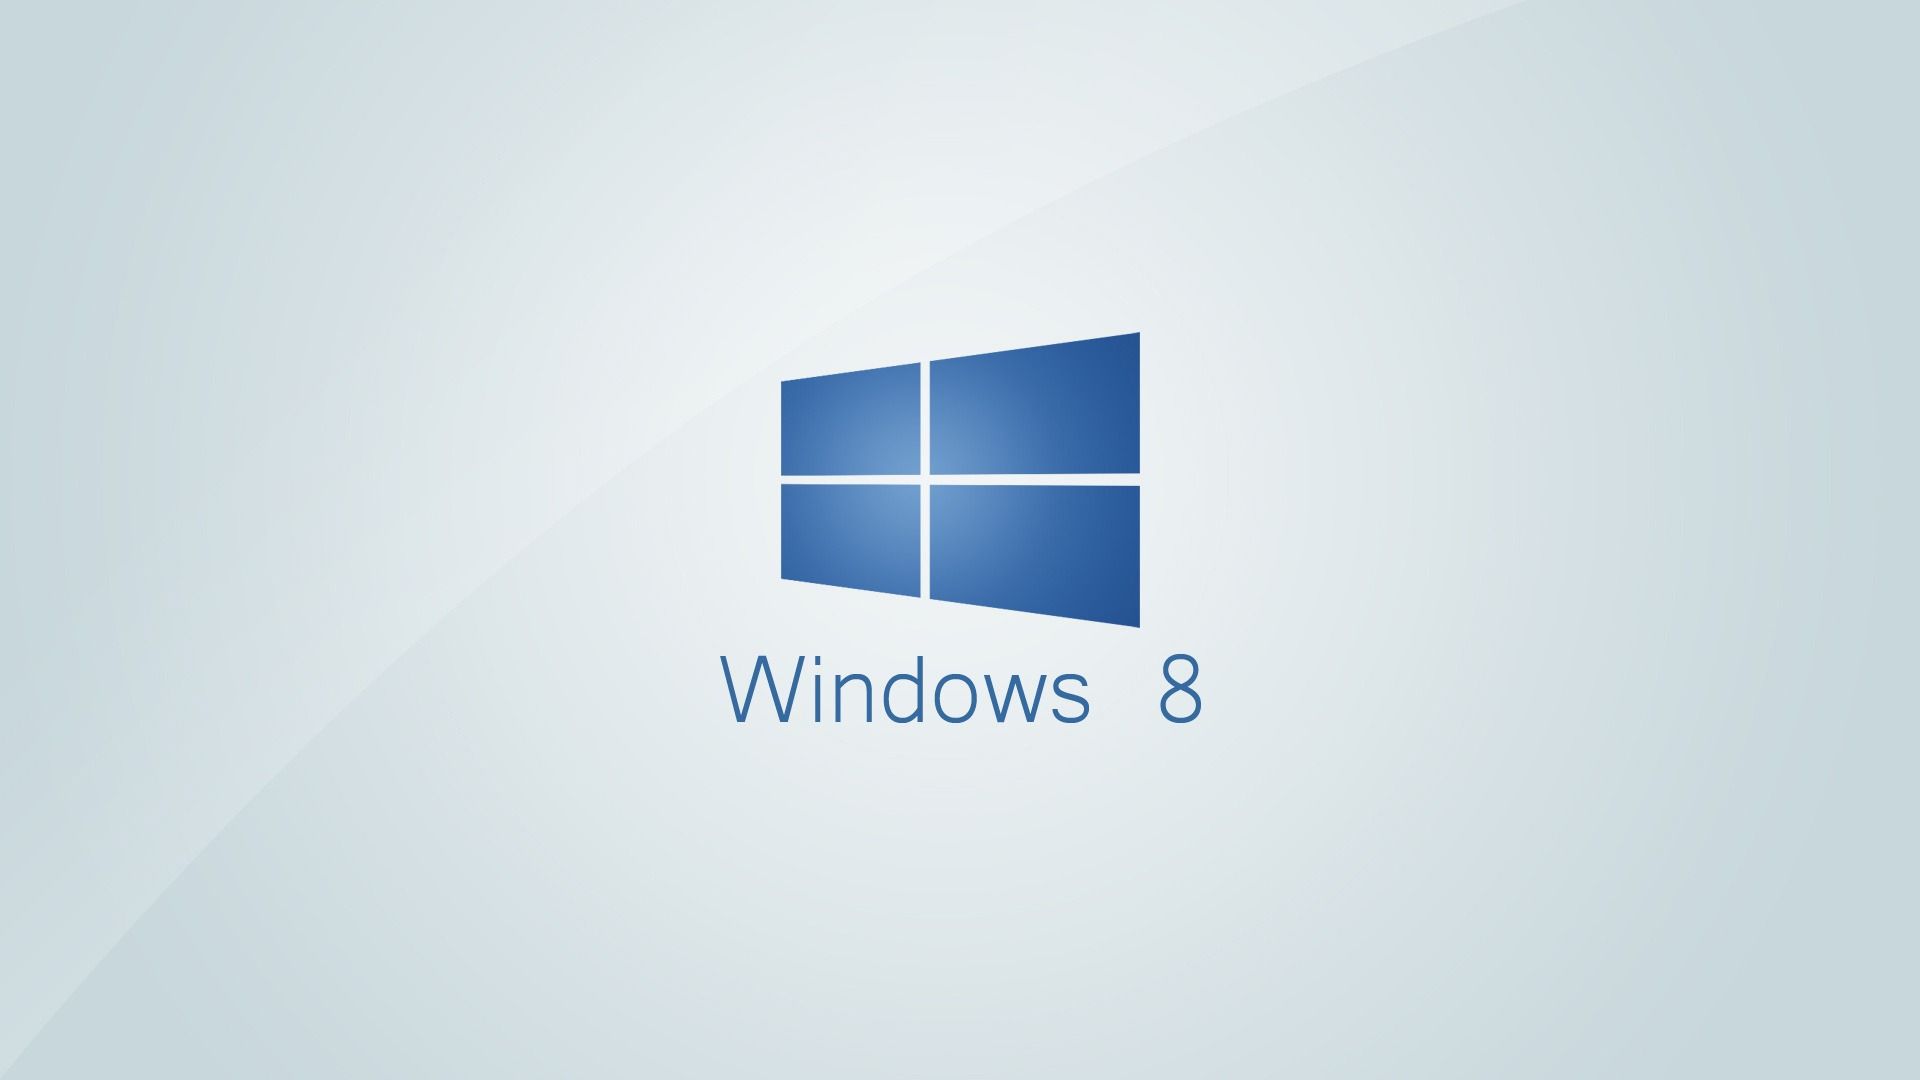 Windows 8 Minimalistic 1920 x 1080 Wallpaper